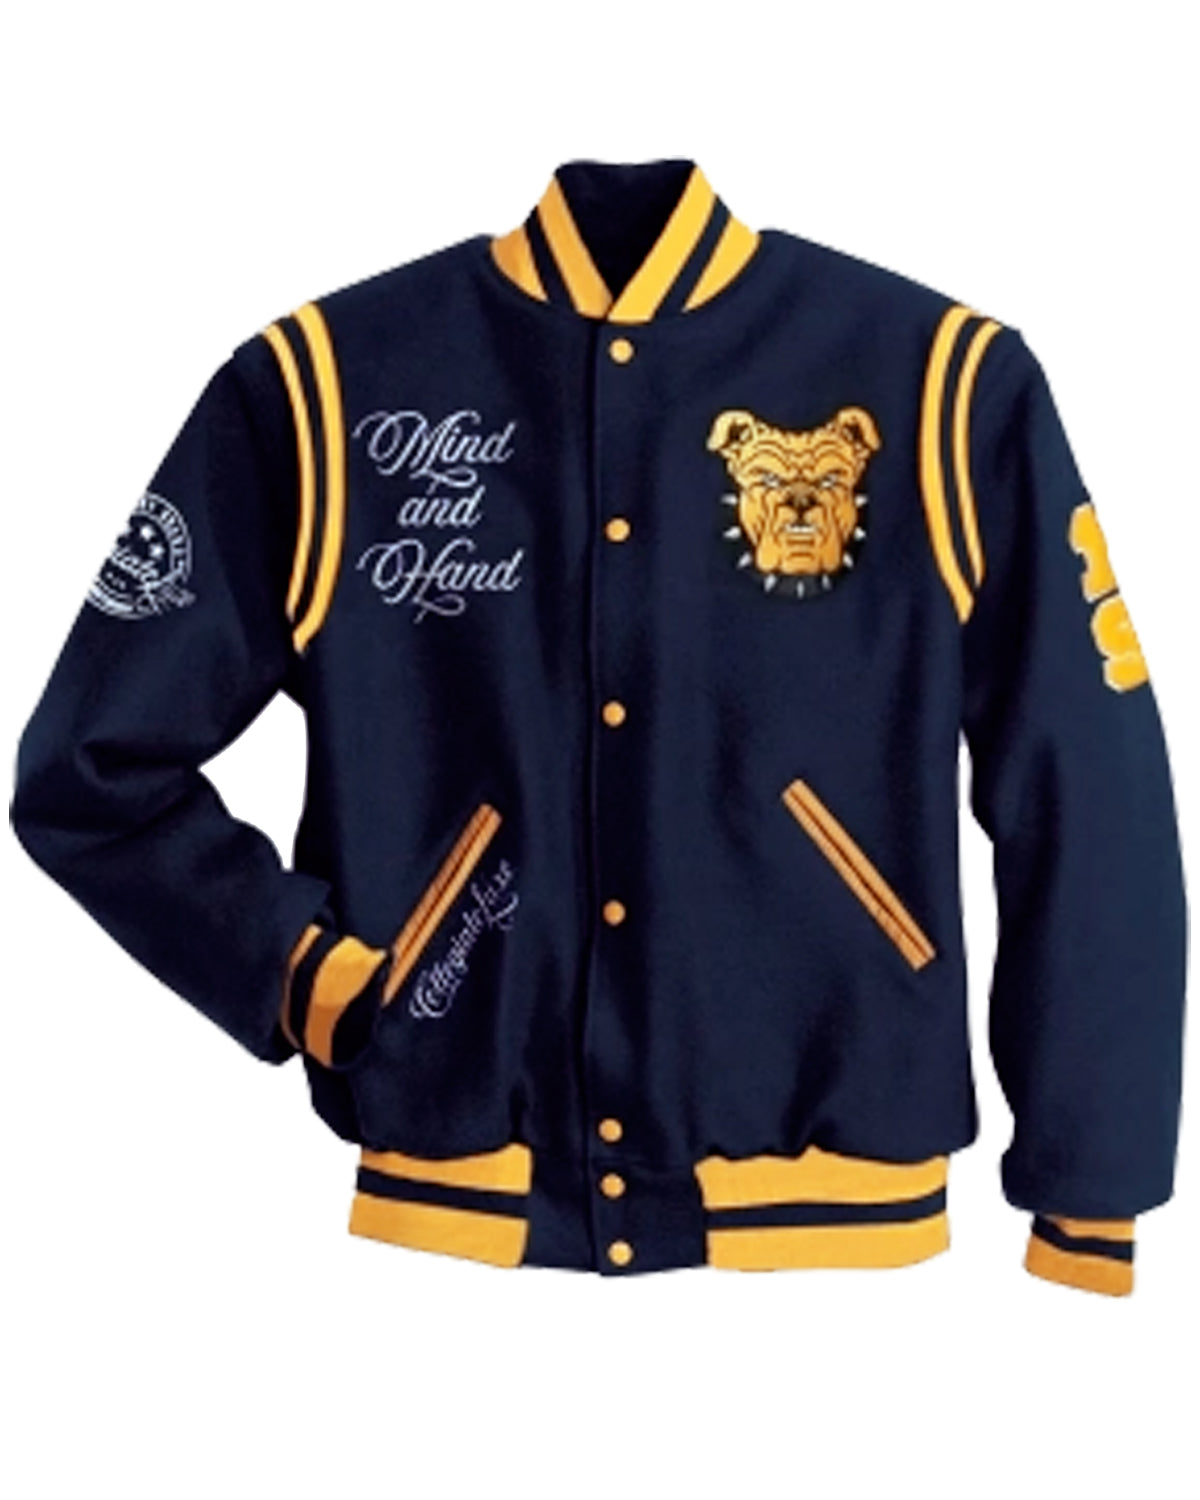 State University North Carolina Aggie Blue Varsity Jacket